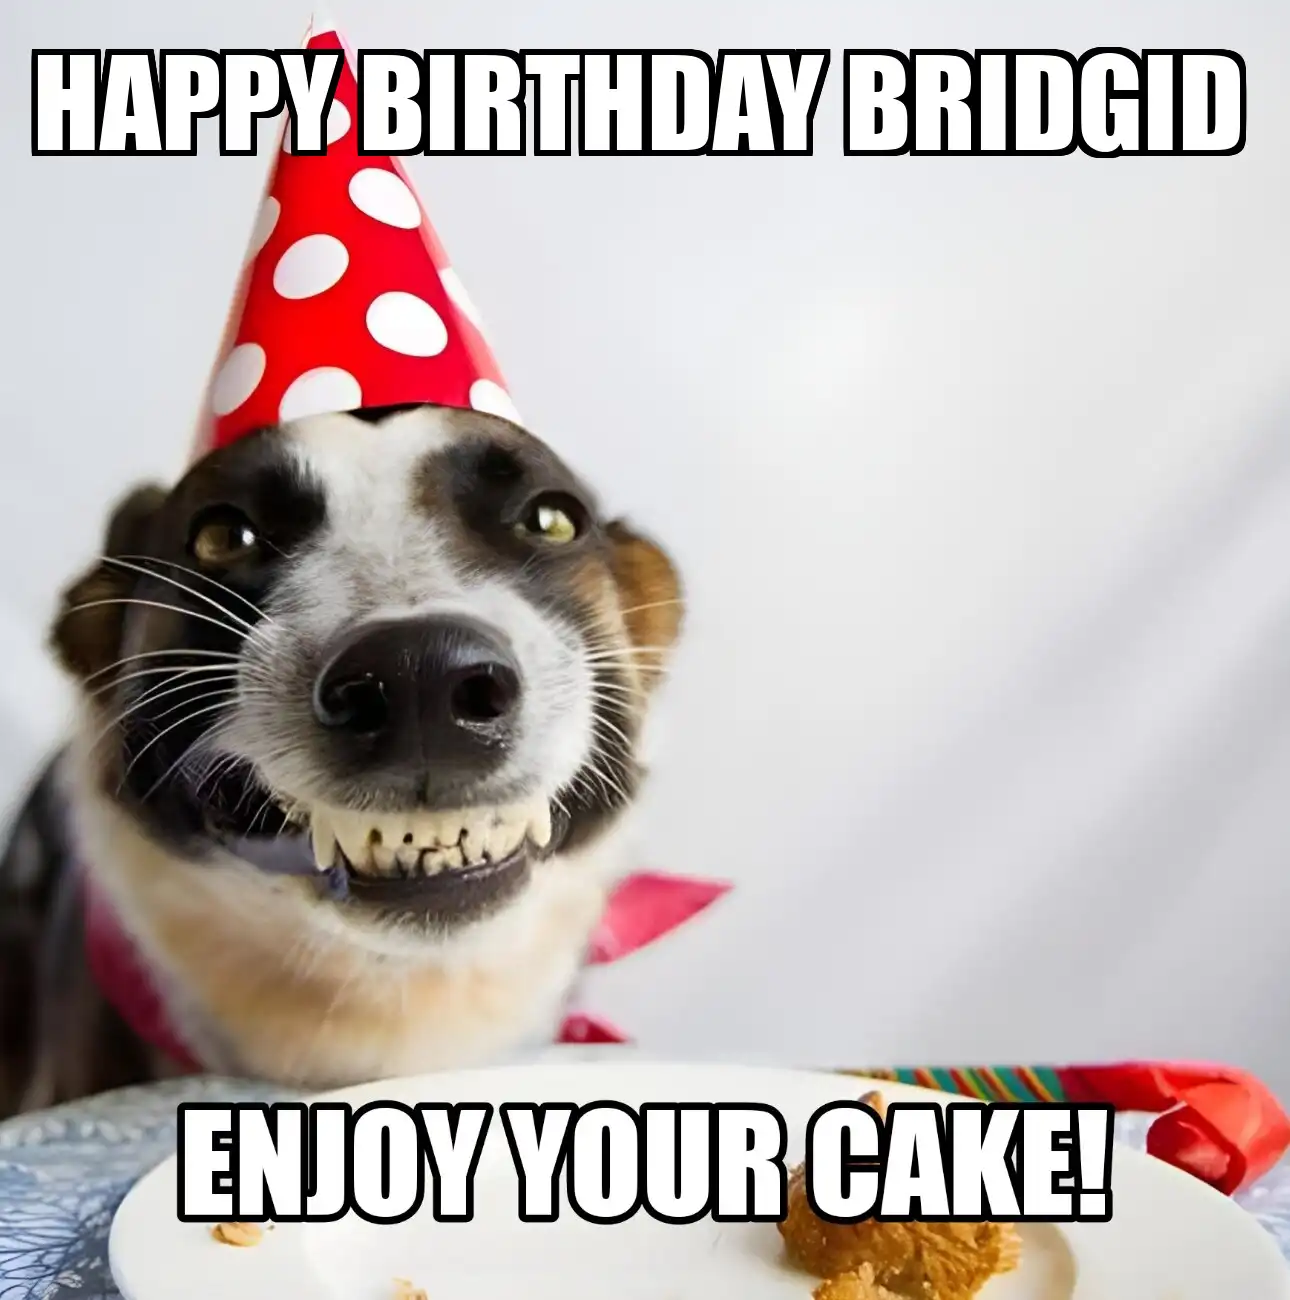 Happy Birthday Bridgid Enjoy Your Cake Dog Meme